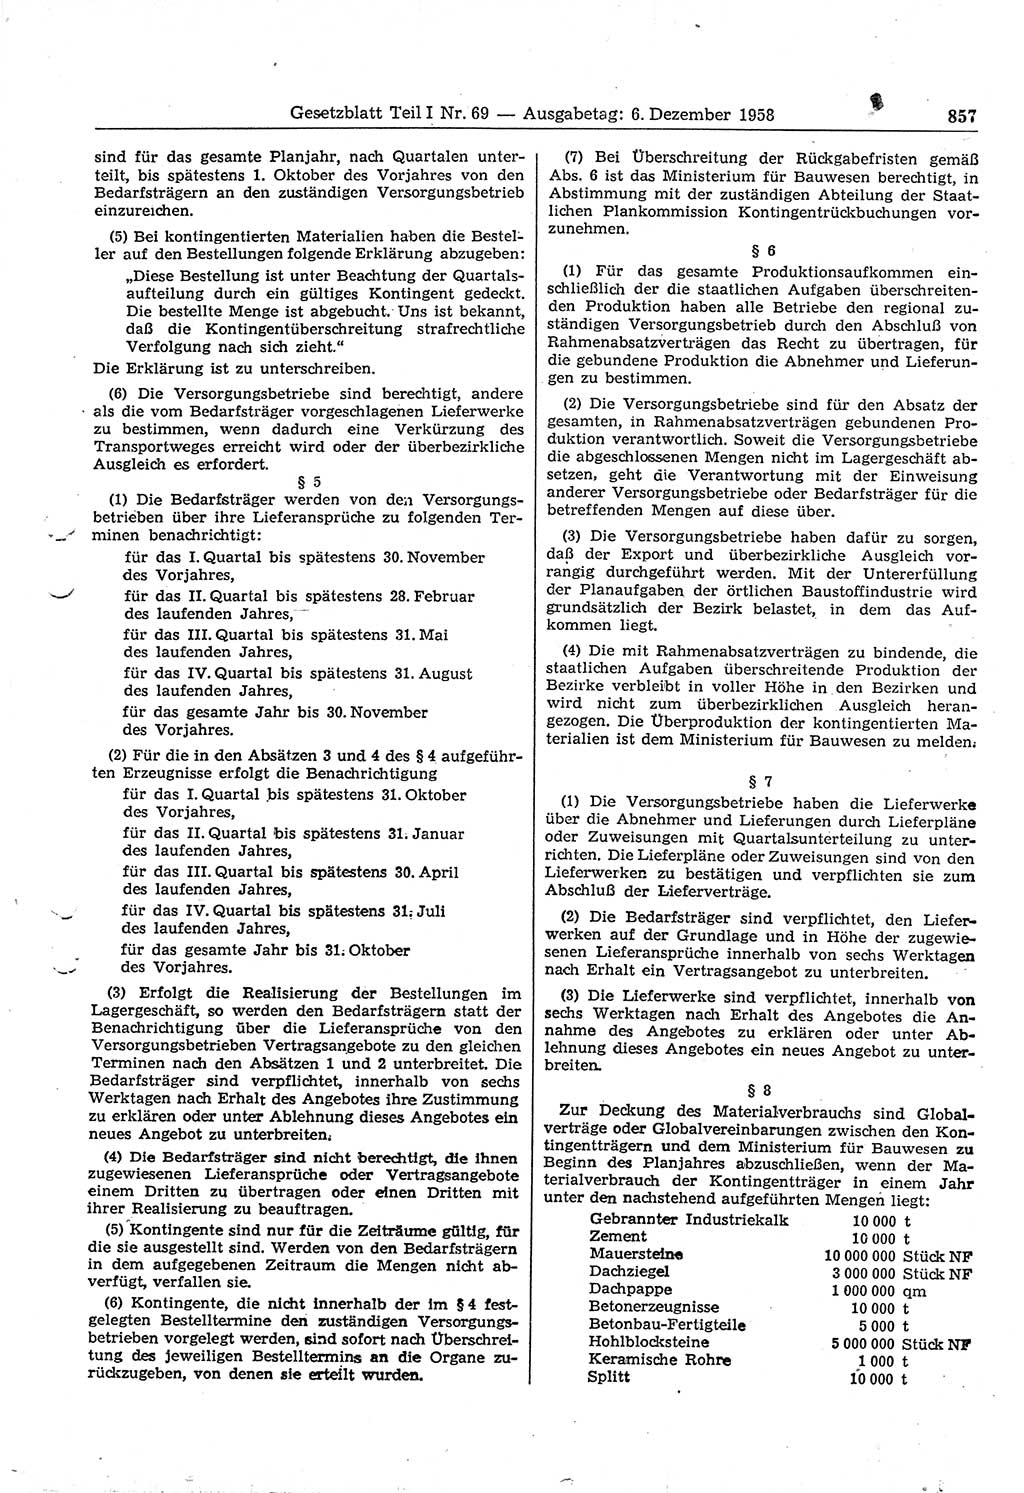 Gesetzblatt (GBl.) der Deutschen Demokratischen Republik (DDR) Teil Ⅰ 1958, Seite 857 (GBl. DDR Ⅰ 1958, S. 857)